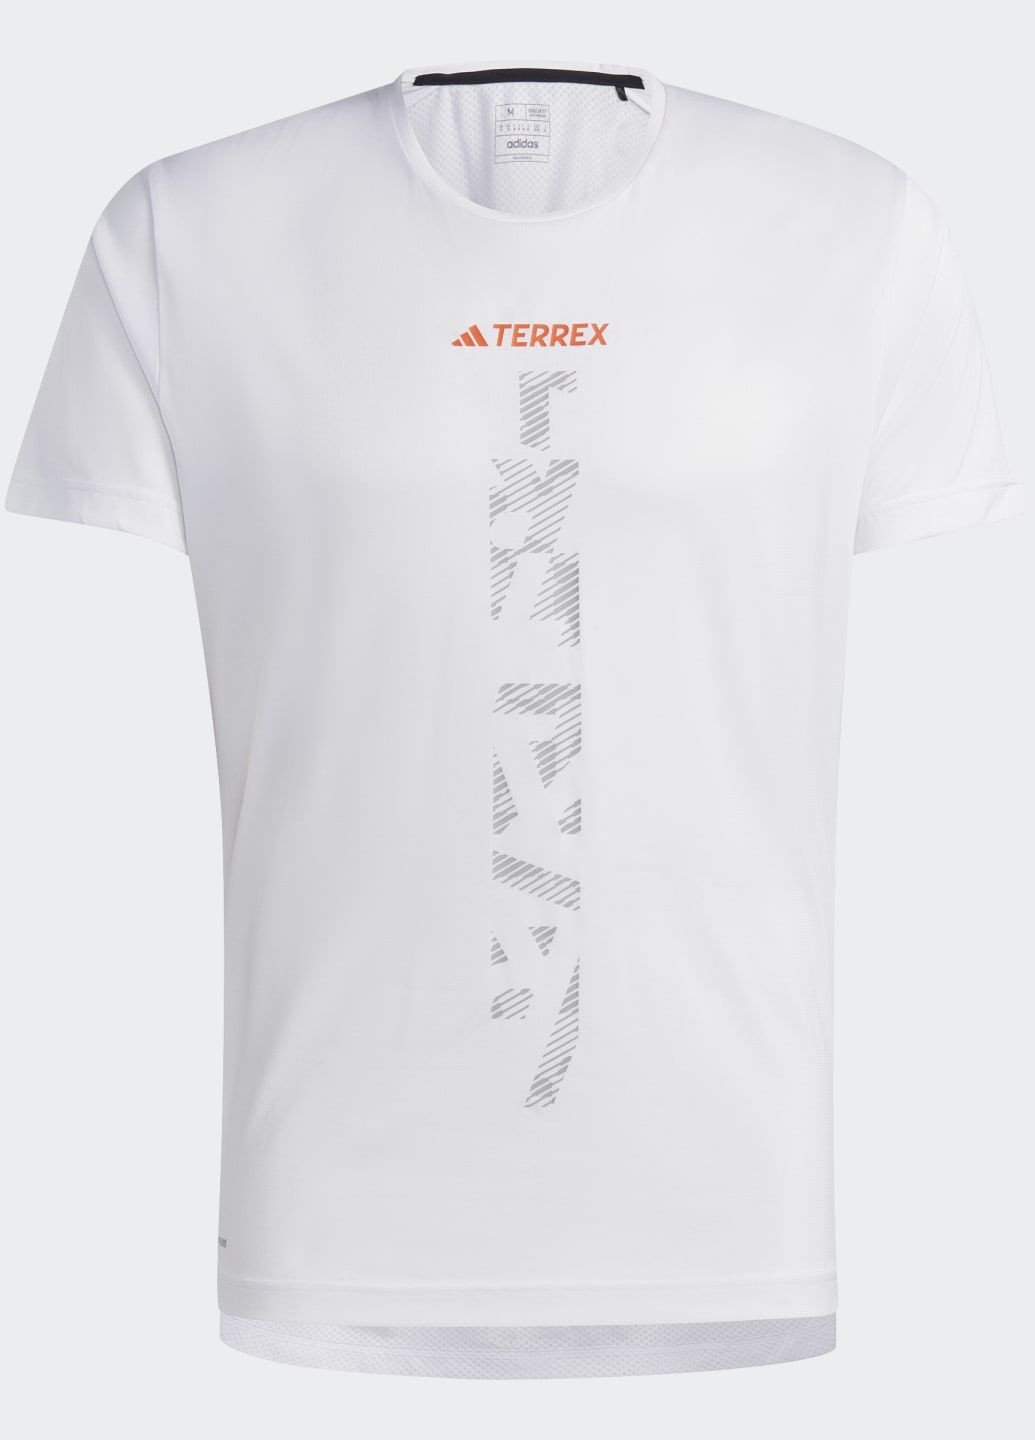 Біла футболка для бігу terrex agravic adidas